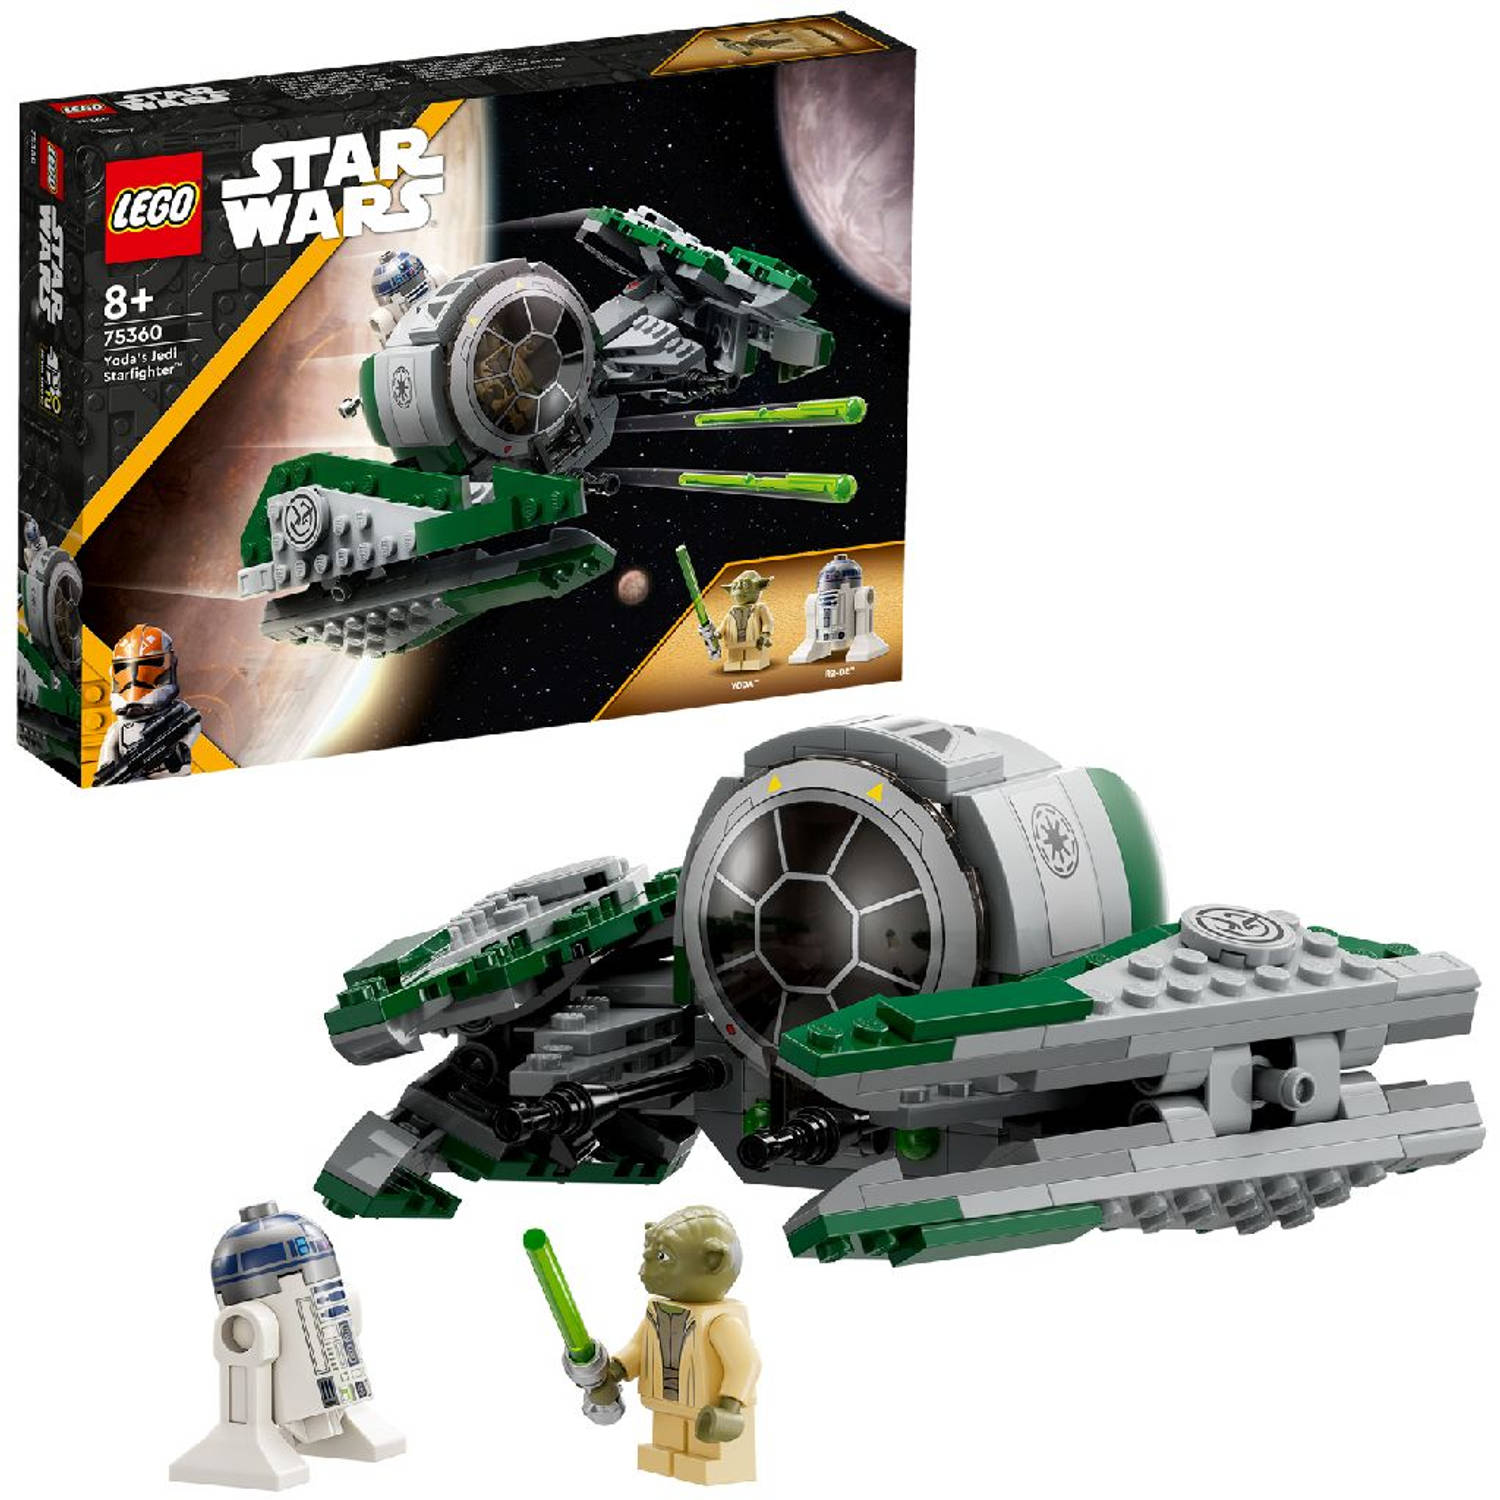 LEGOÂ®Star Wars 75360 Yoda's Jedi Starfighter